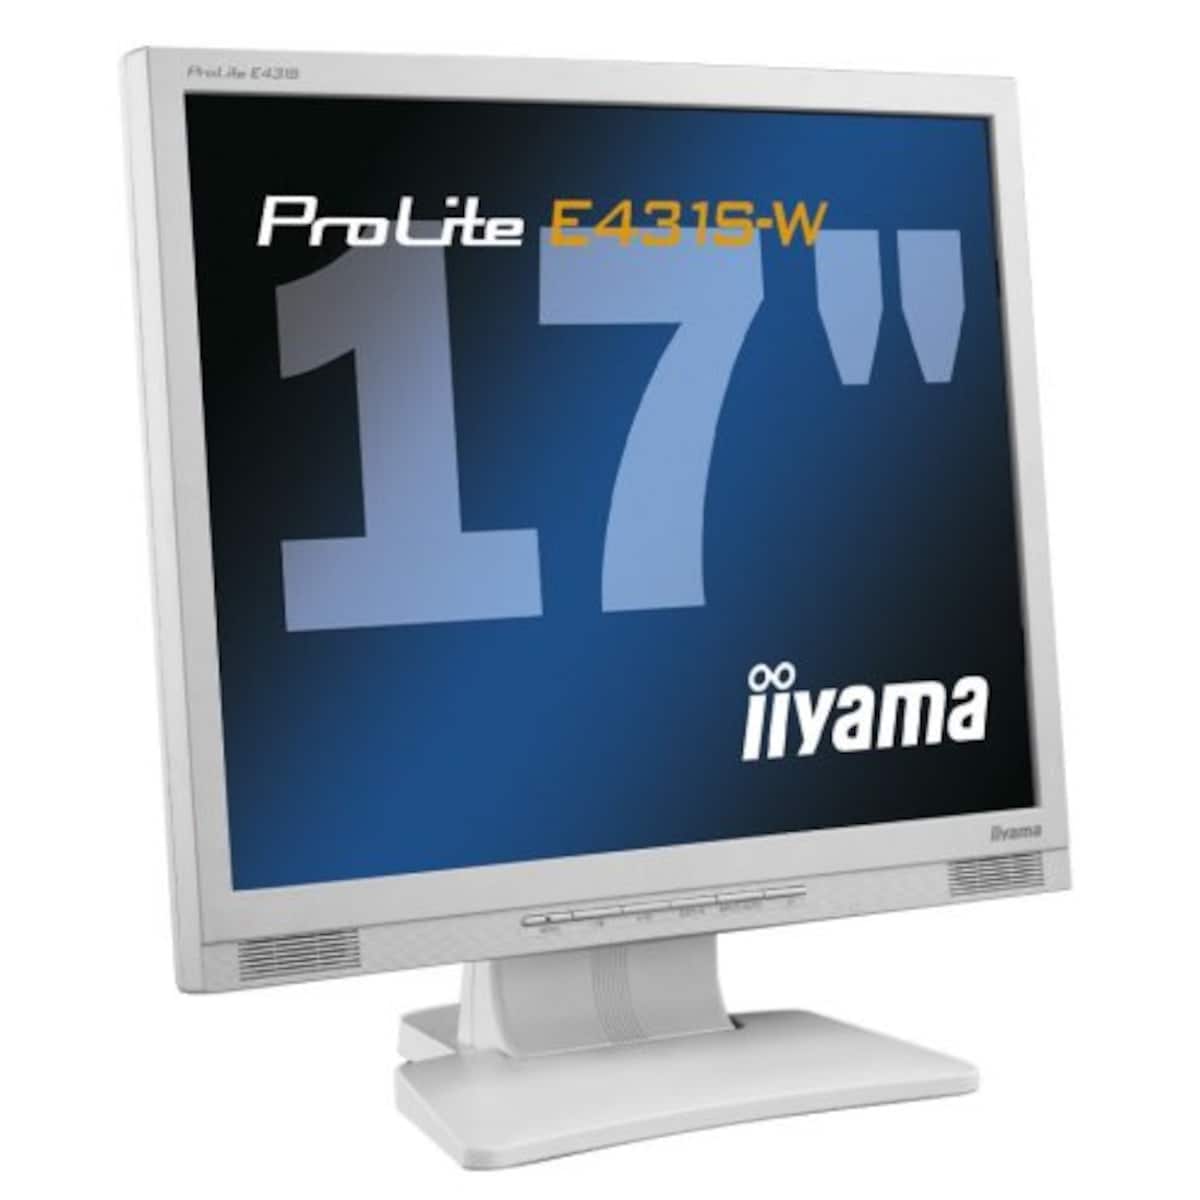 iiyama 17インチ液晶ディスプレイ(ホワイト) PLE431S-W6S